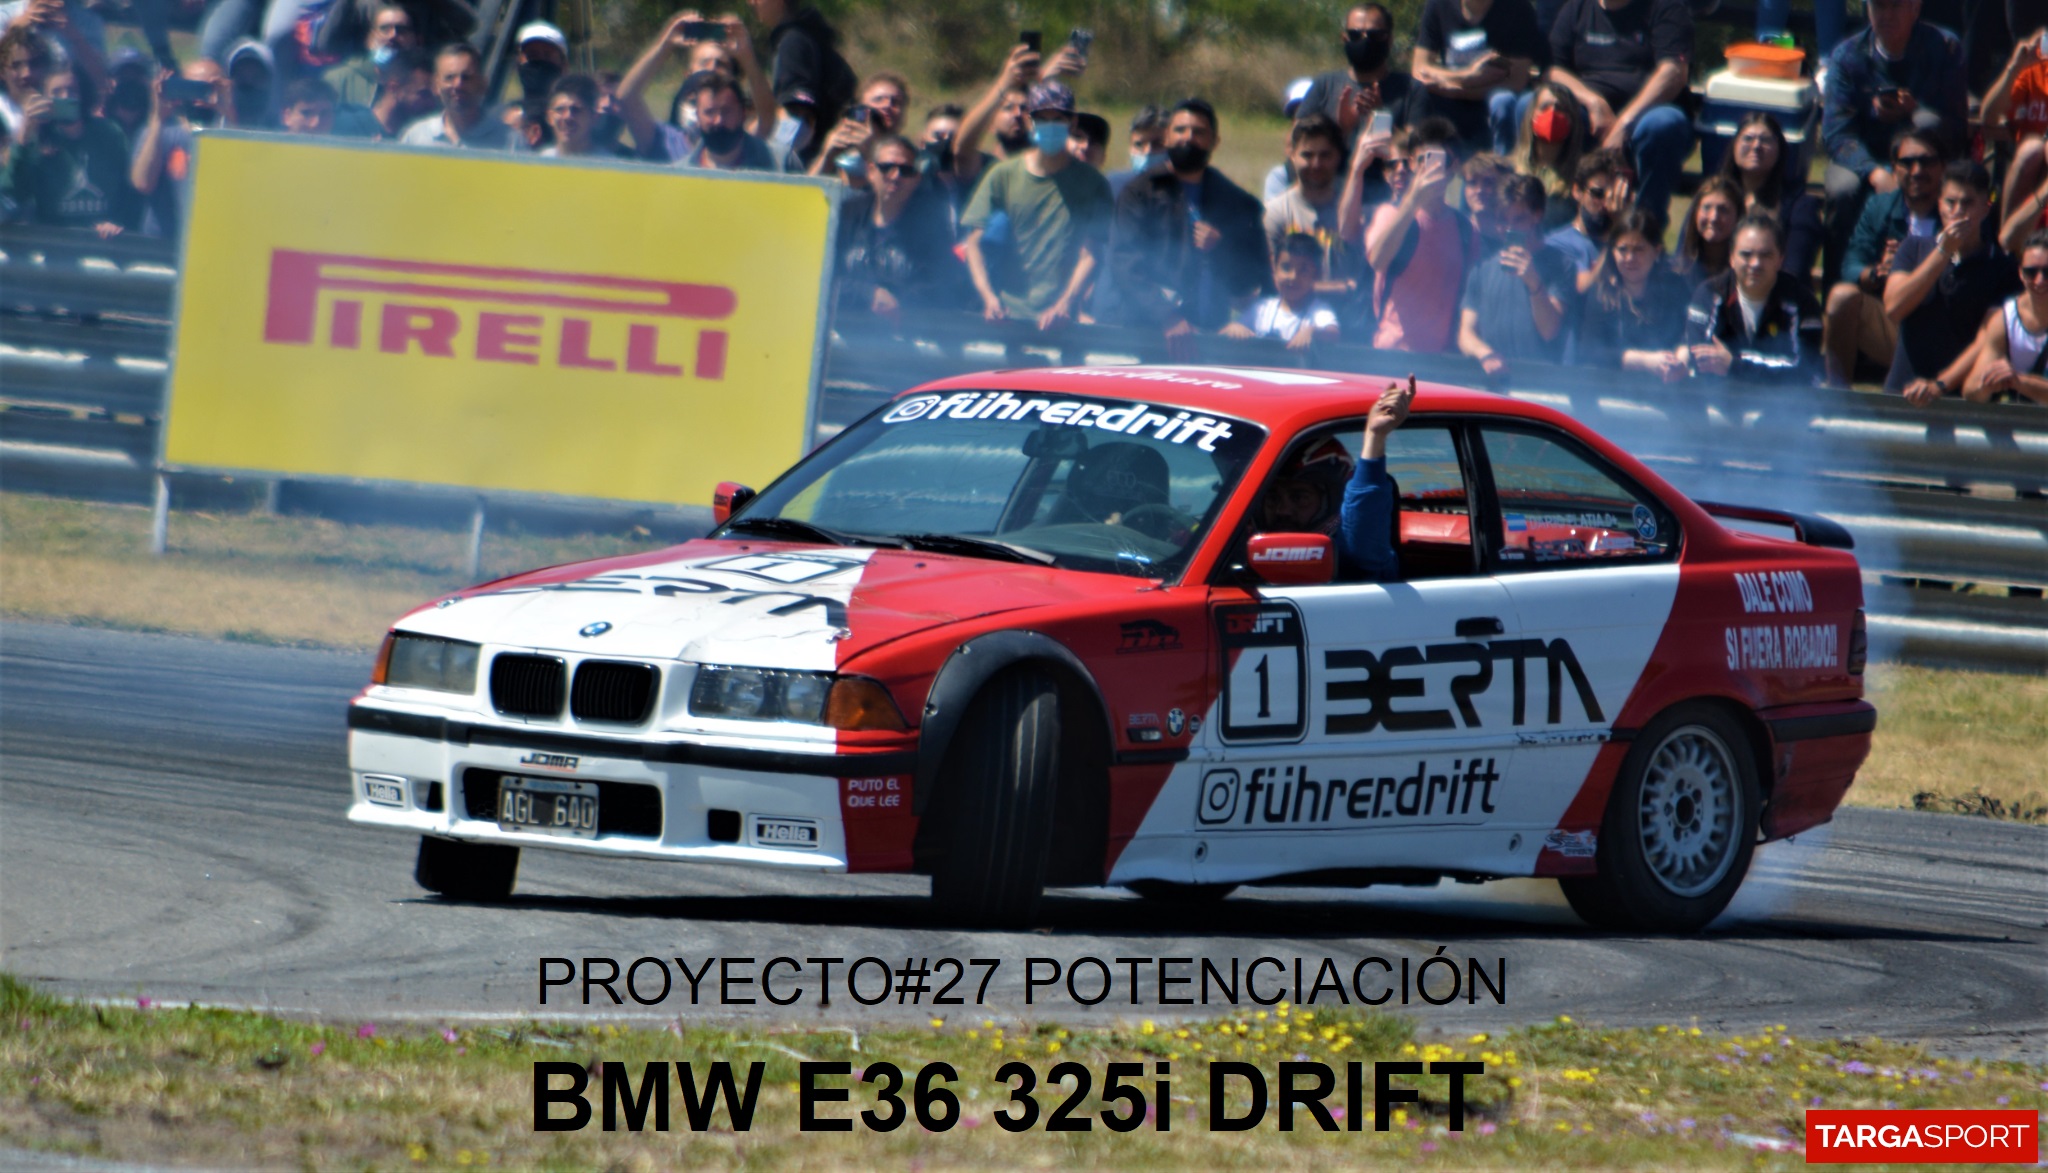 PROYECTO#27 POTENCIACIÓN BMW E36 325i DRIFT